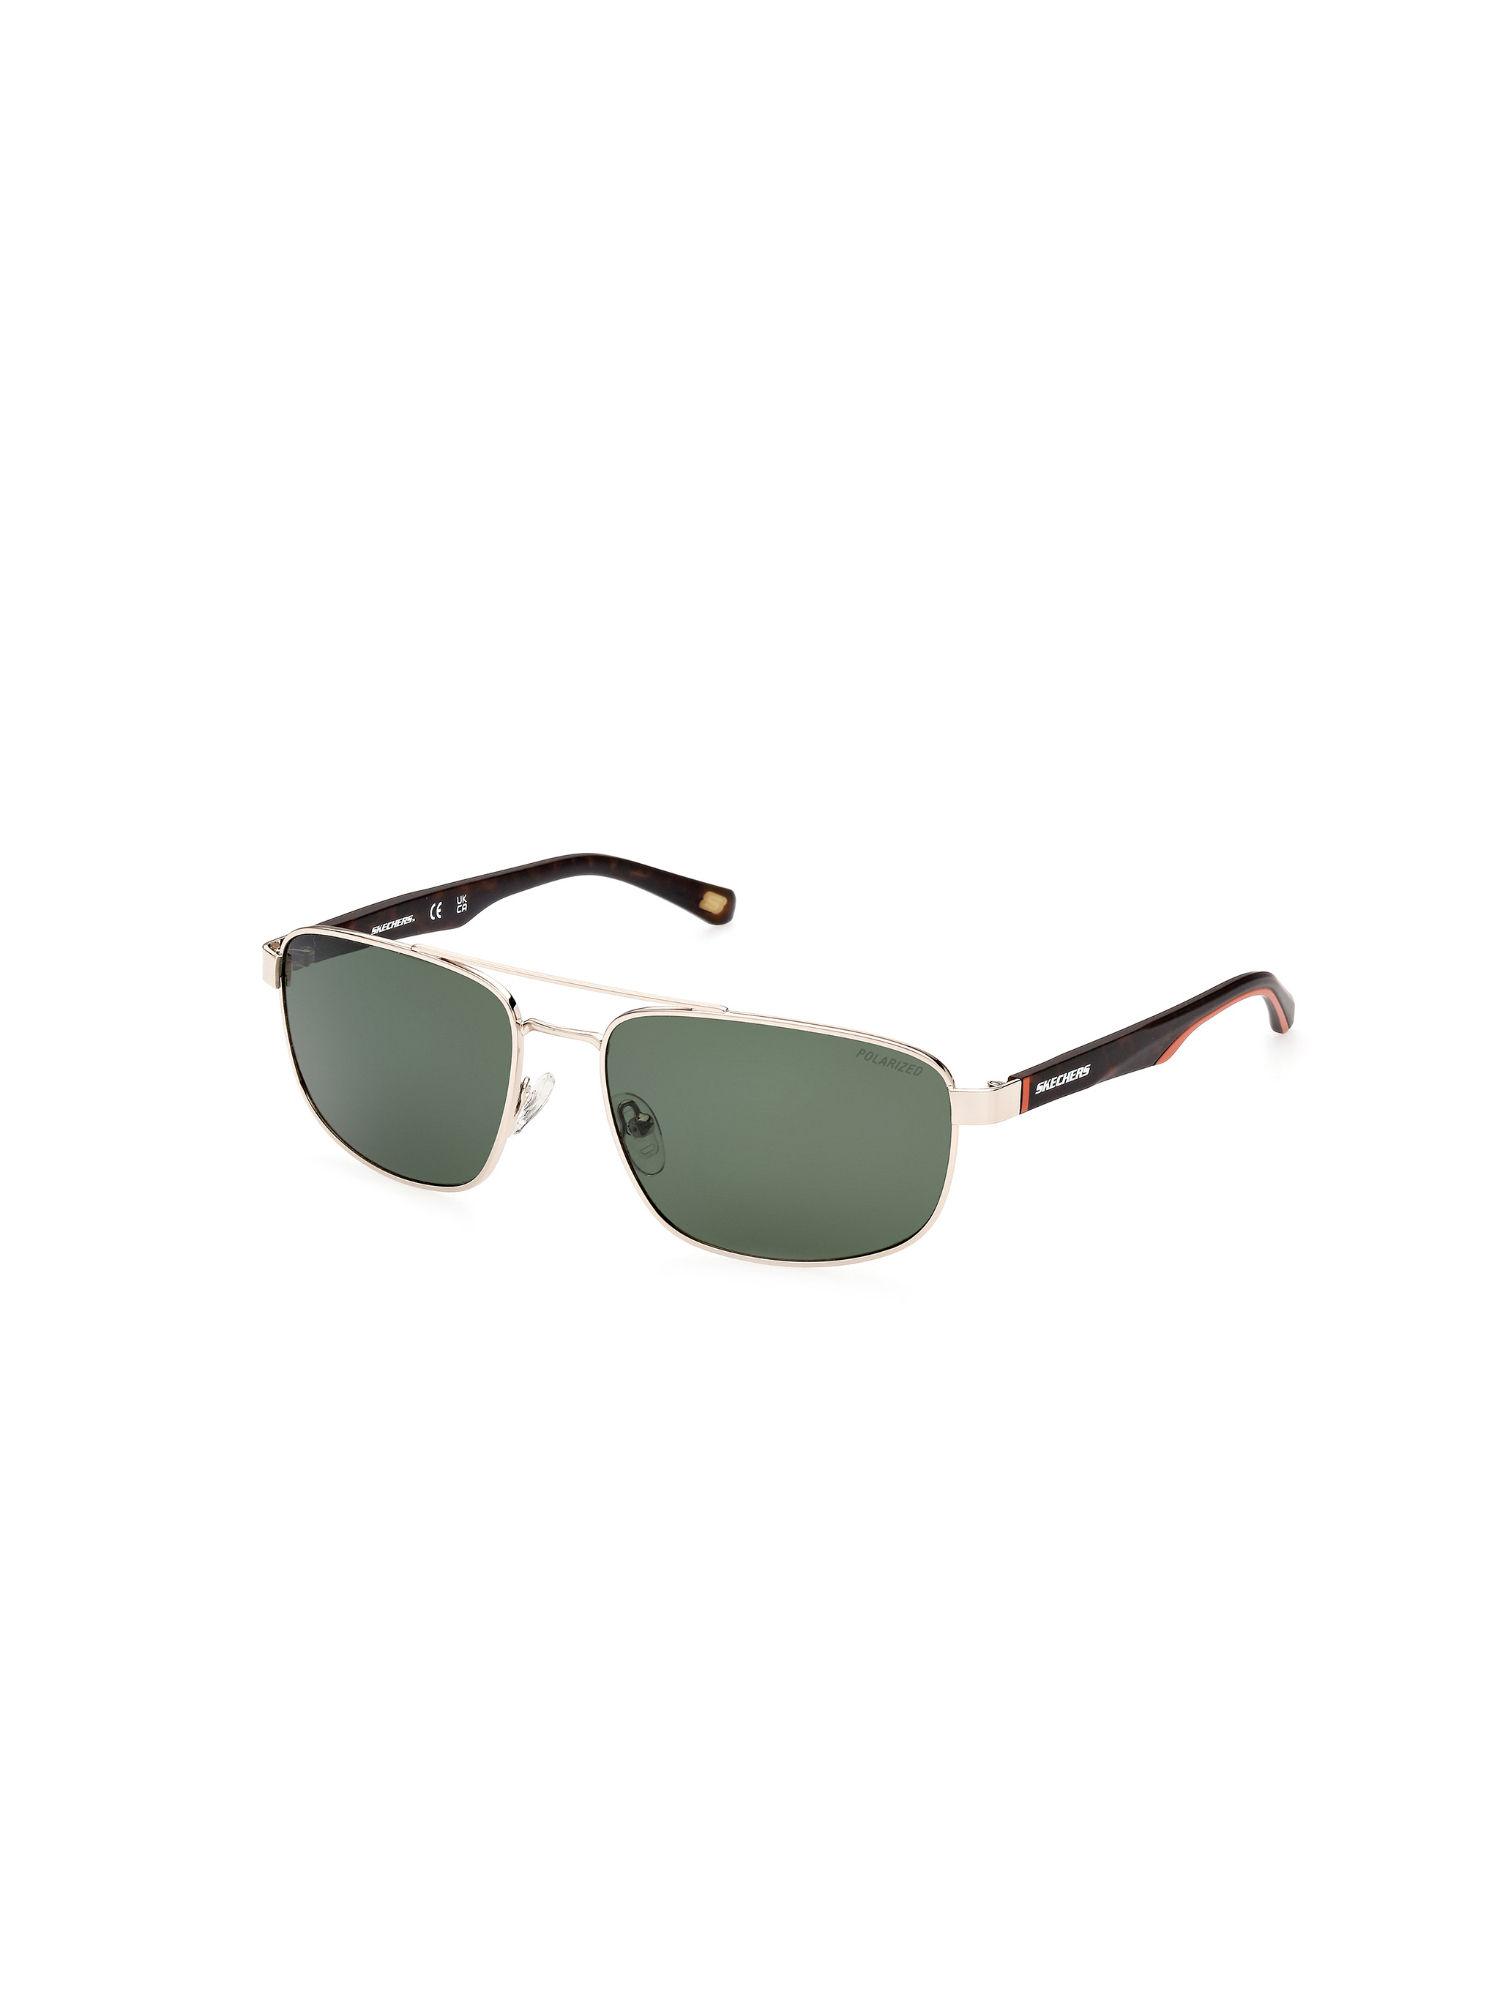 silver metal sunglasses se6175 58 32r